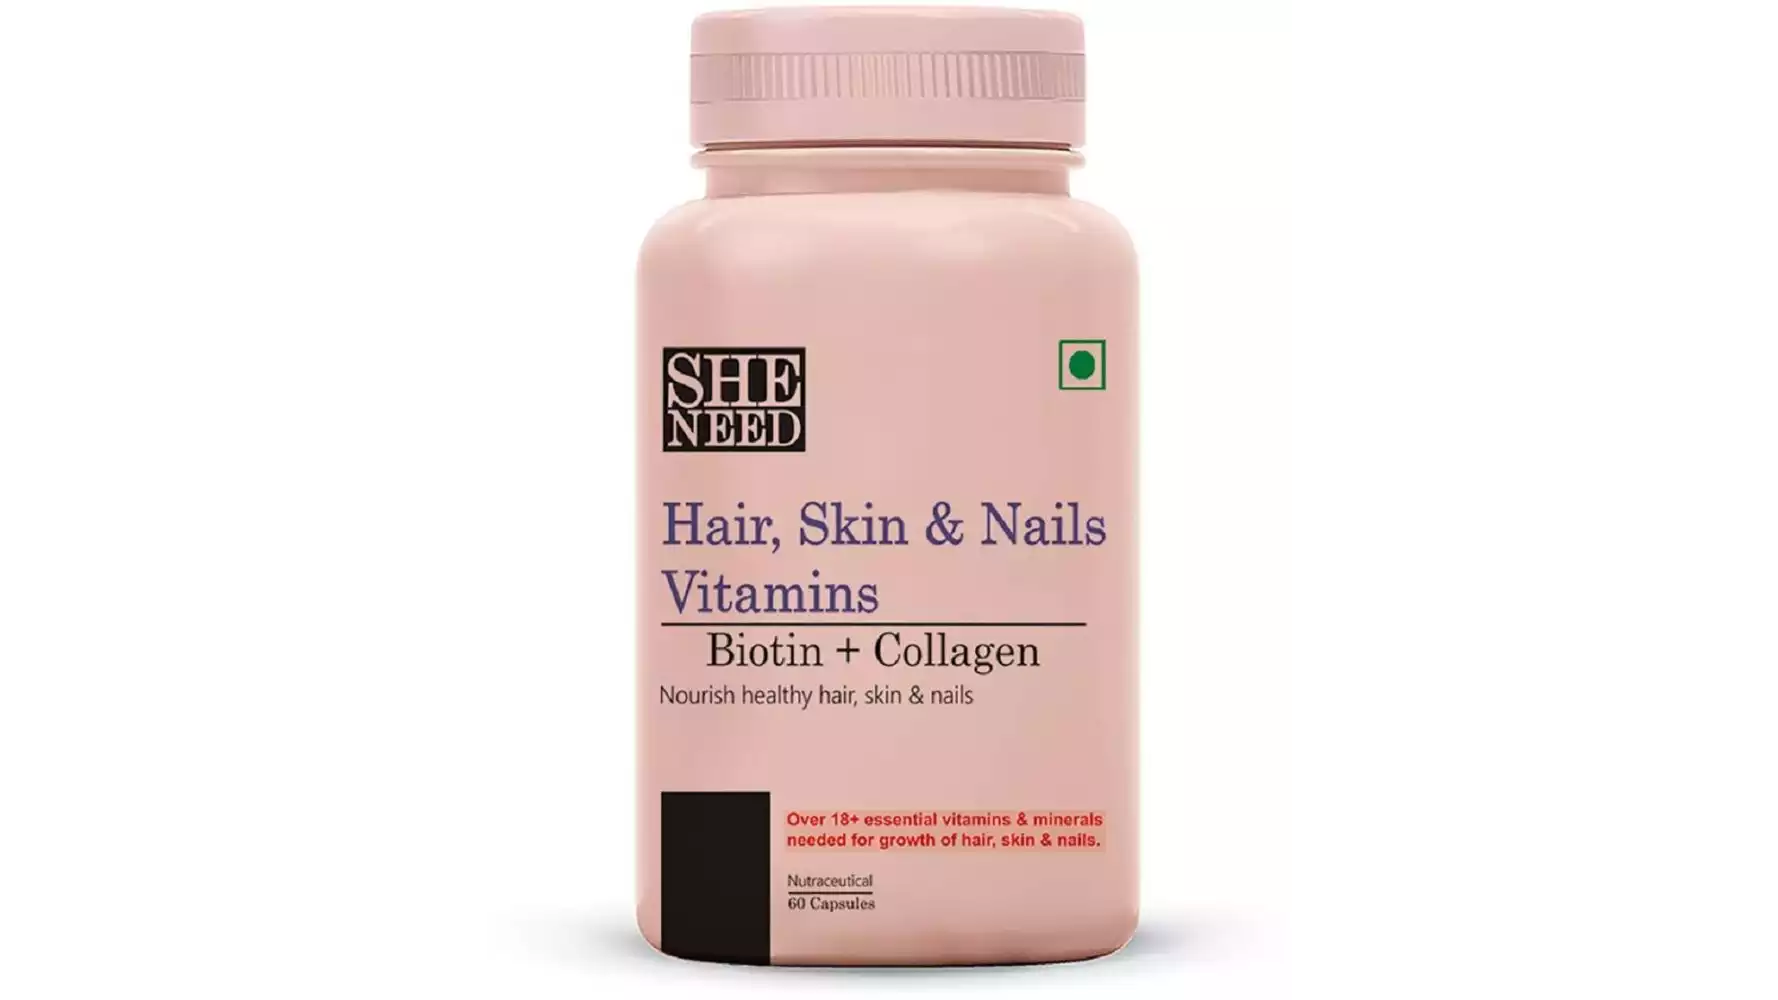 SheNeed Hair Skin & Nails Vitamins Supplements (60caps)